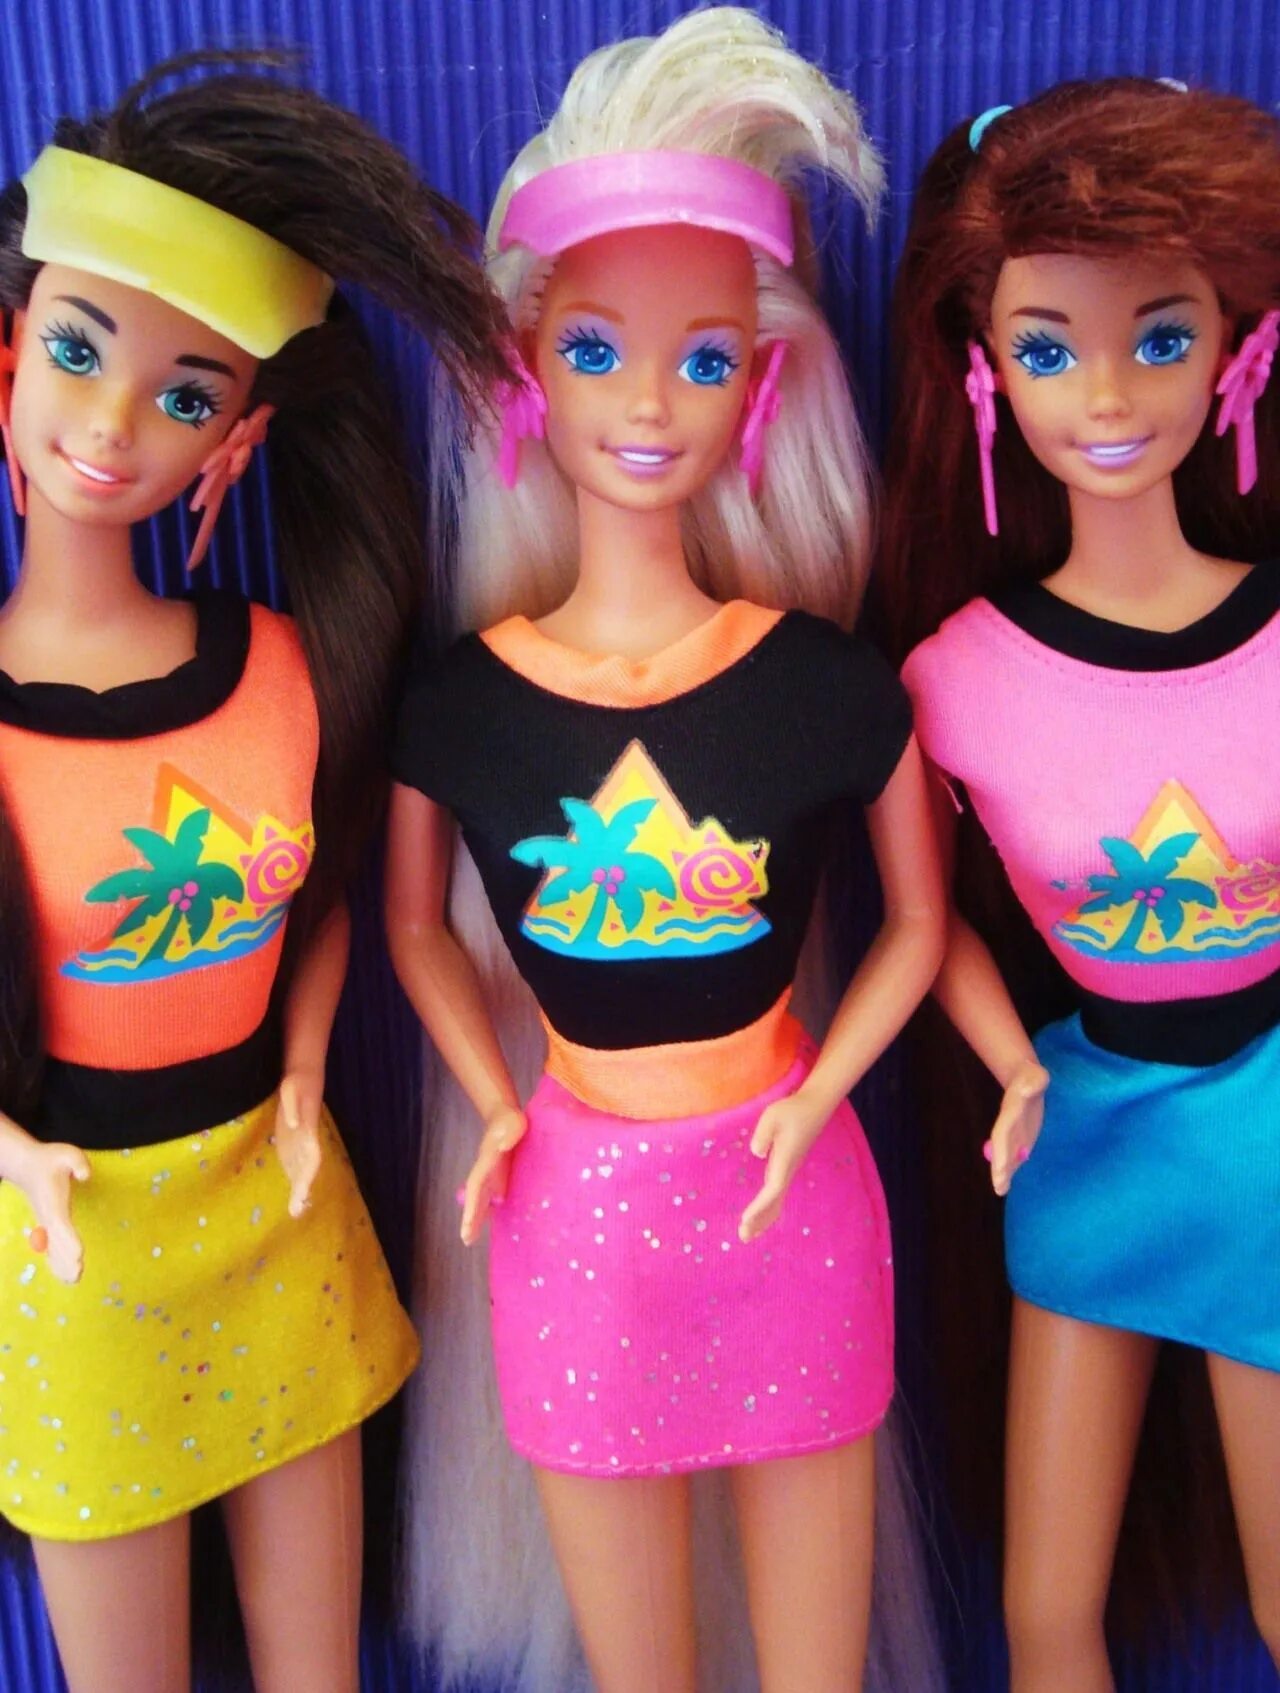 Кукла Барби 90е. Барби Малибу 90е. Барби ’90s Fashion trends. Кукла Барби 90е 00е.